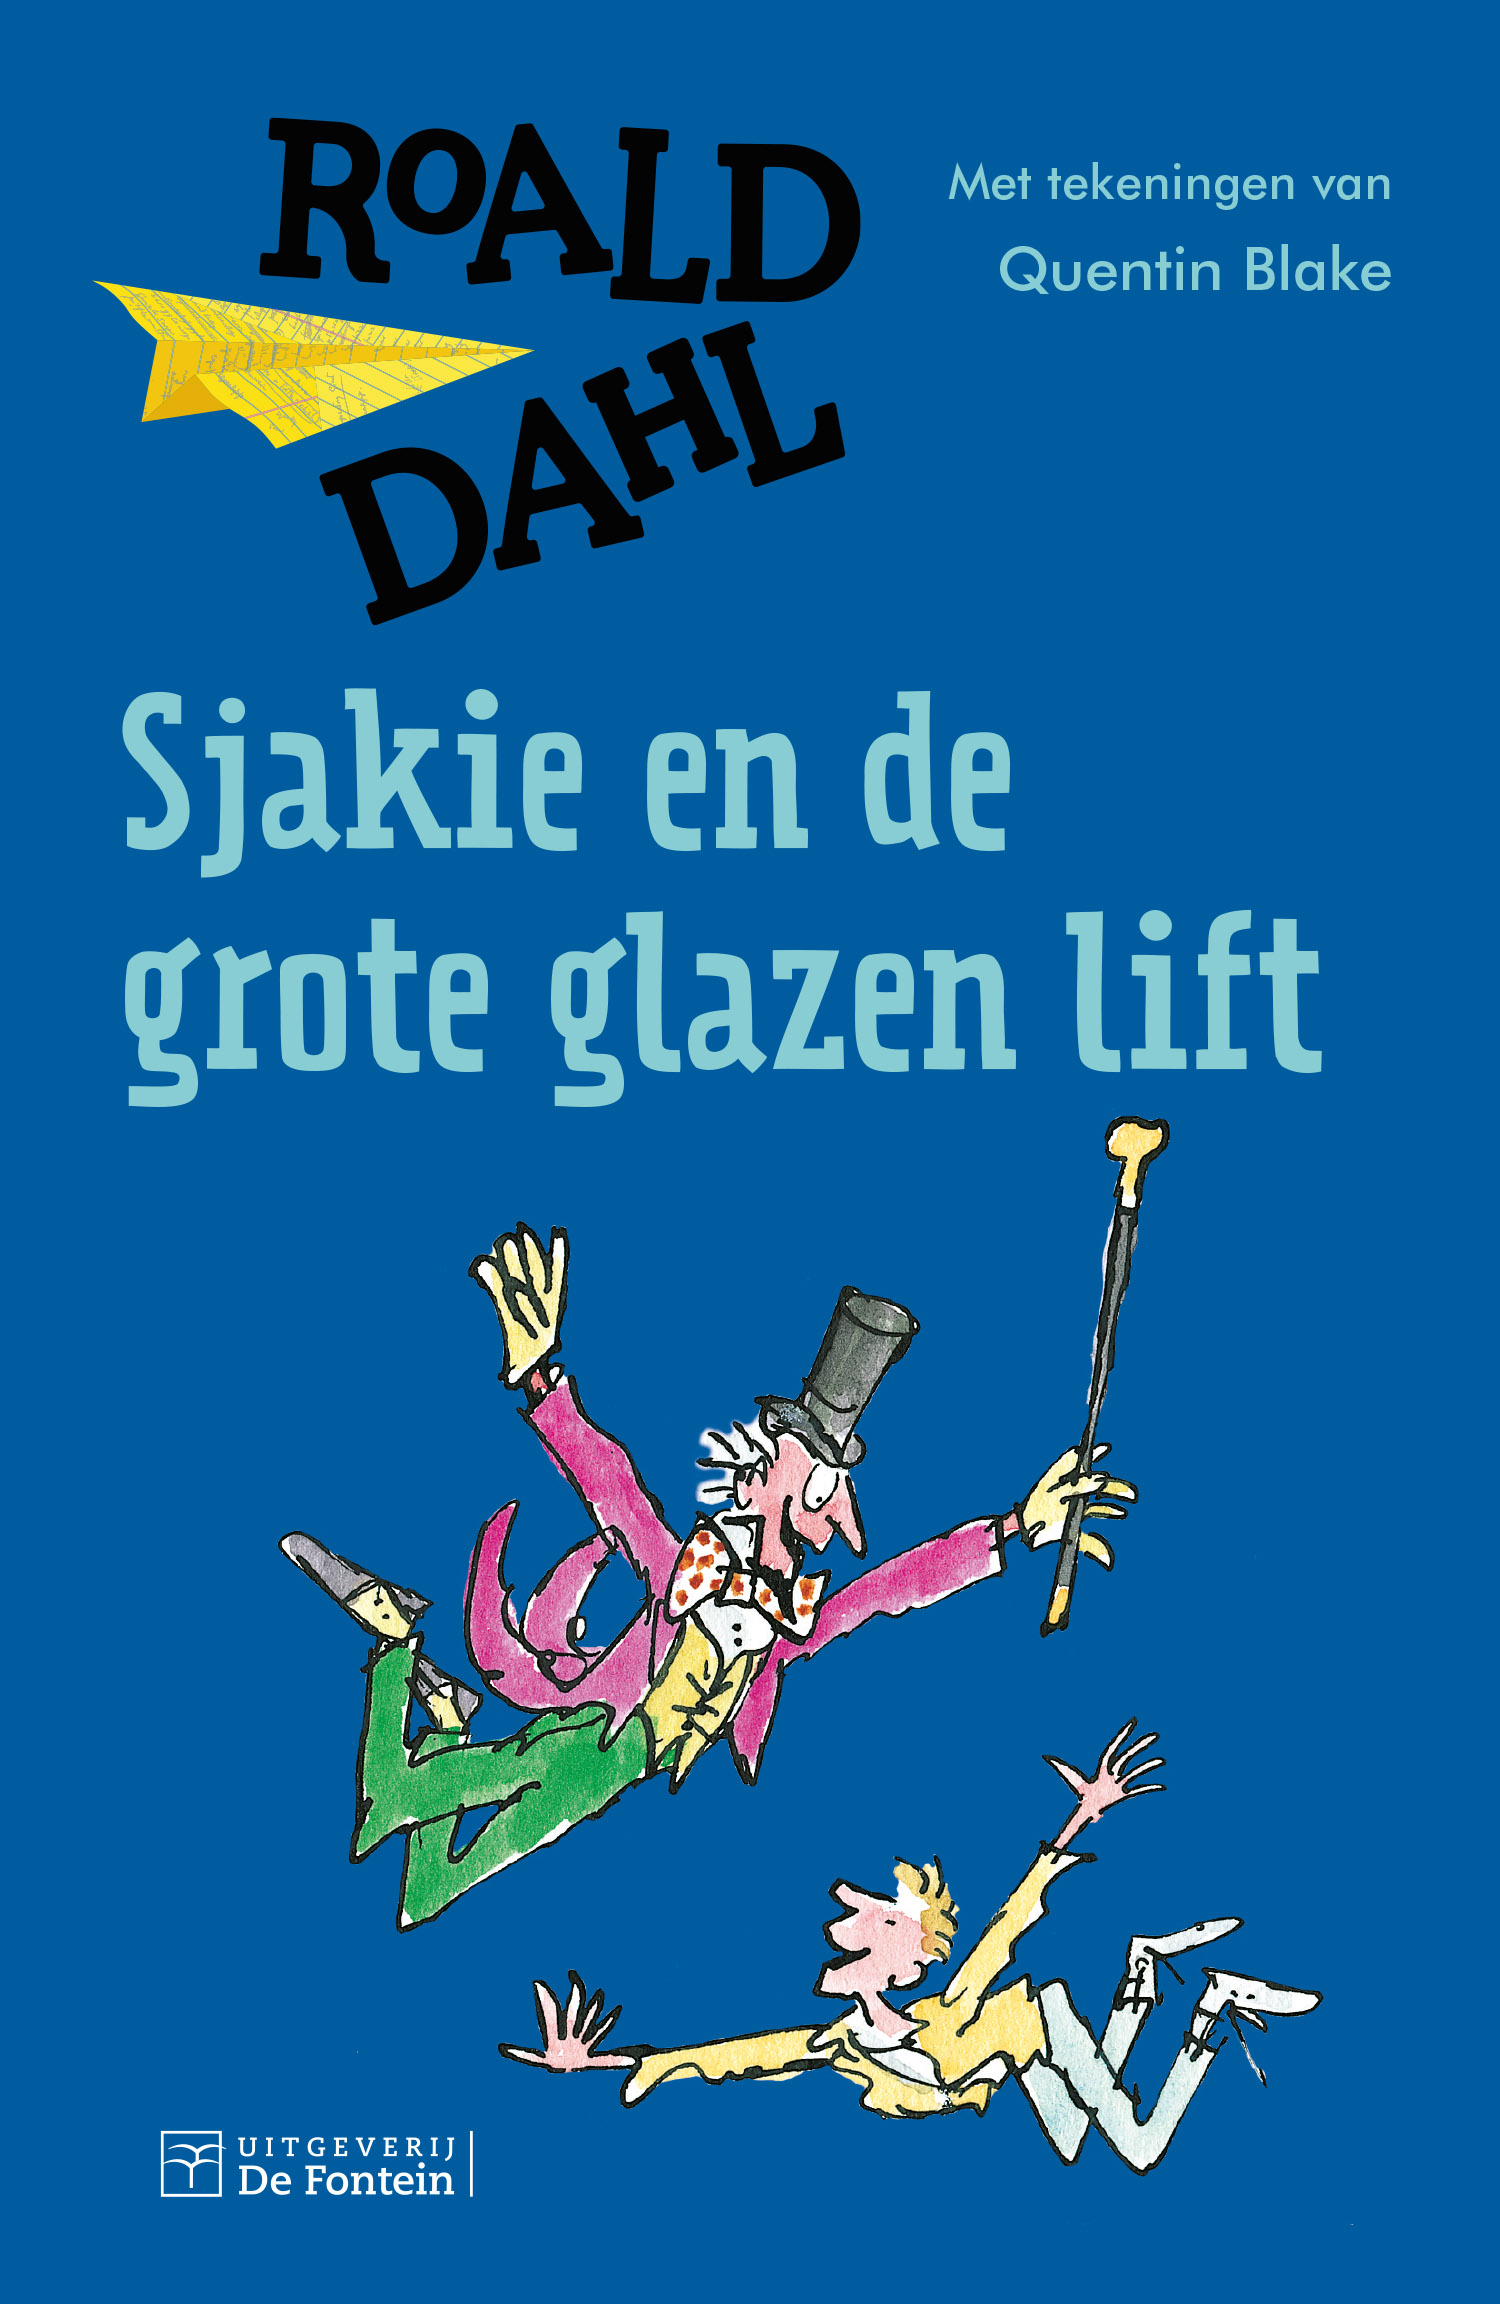 Sjakie en de grote glazen lift van Roald Dahl